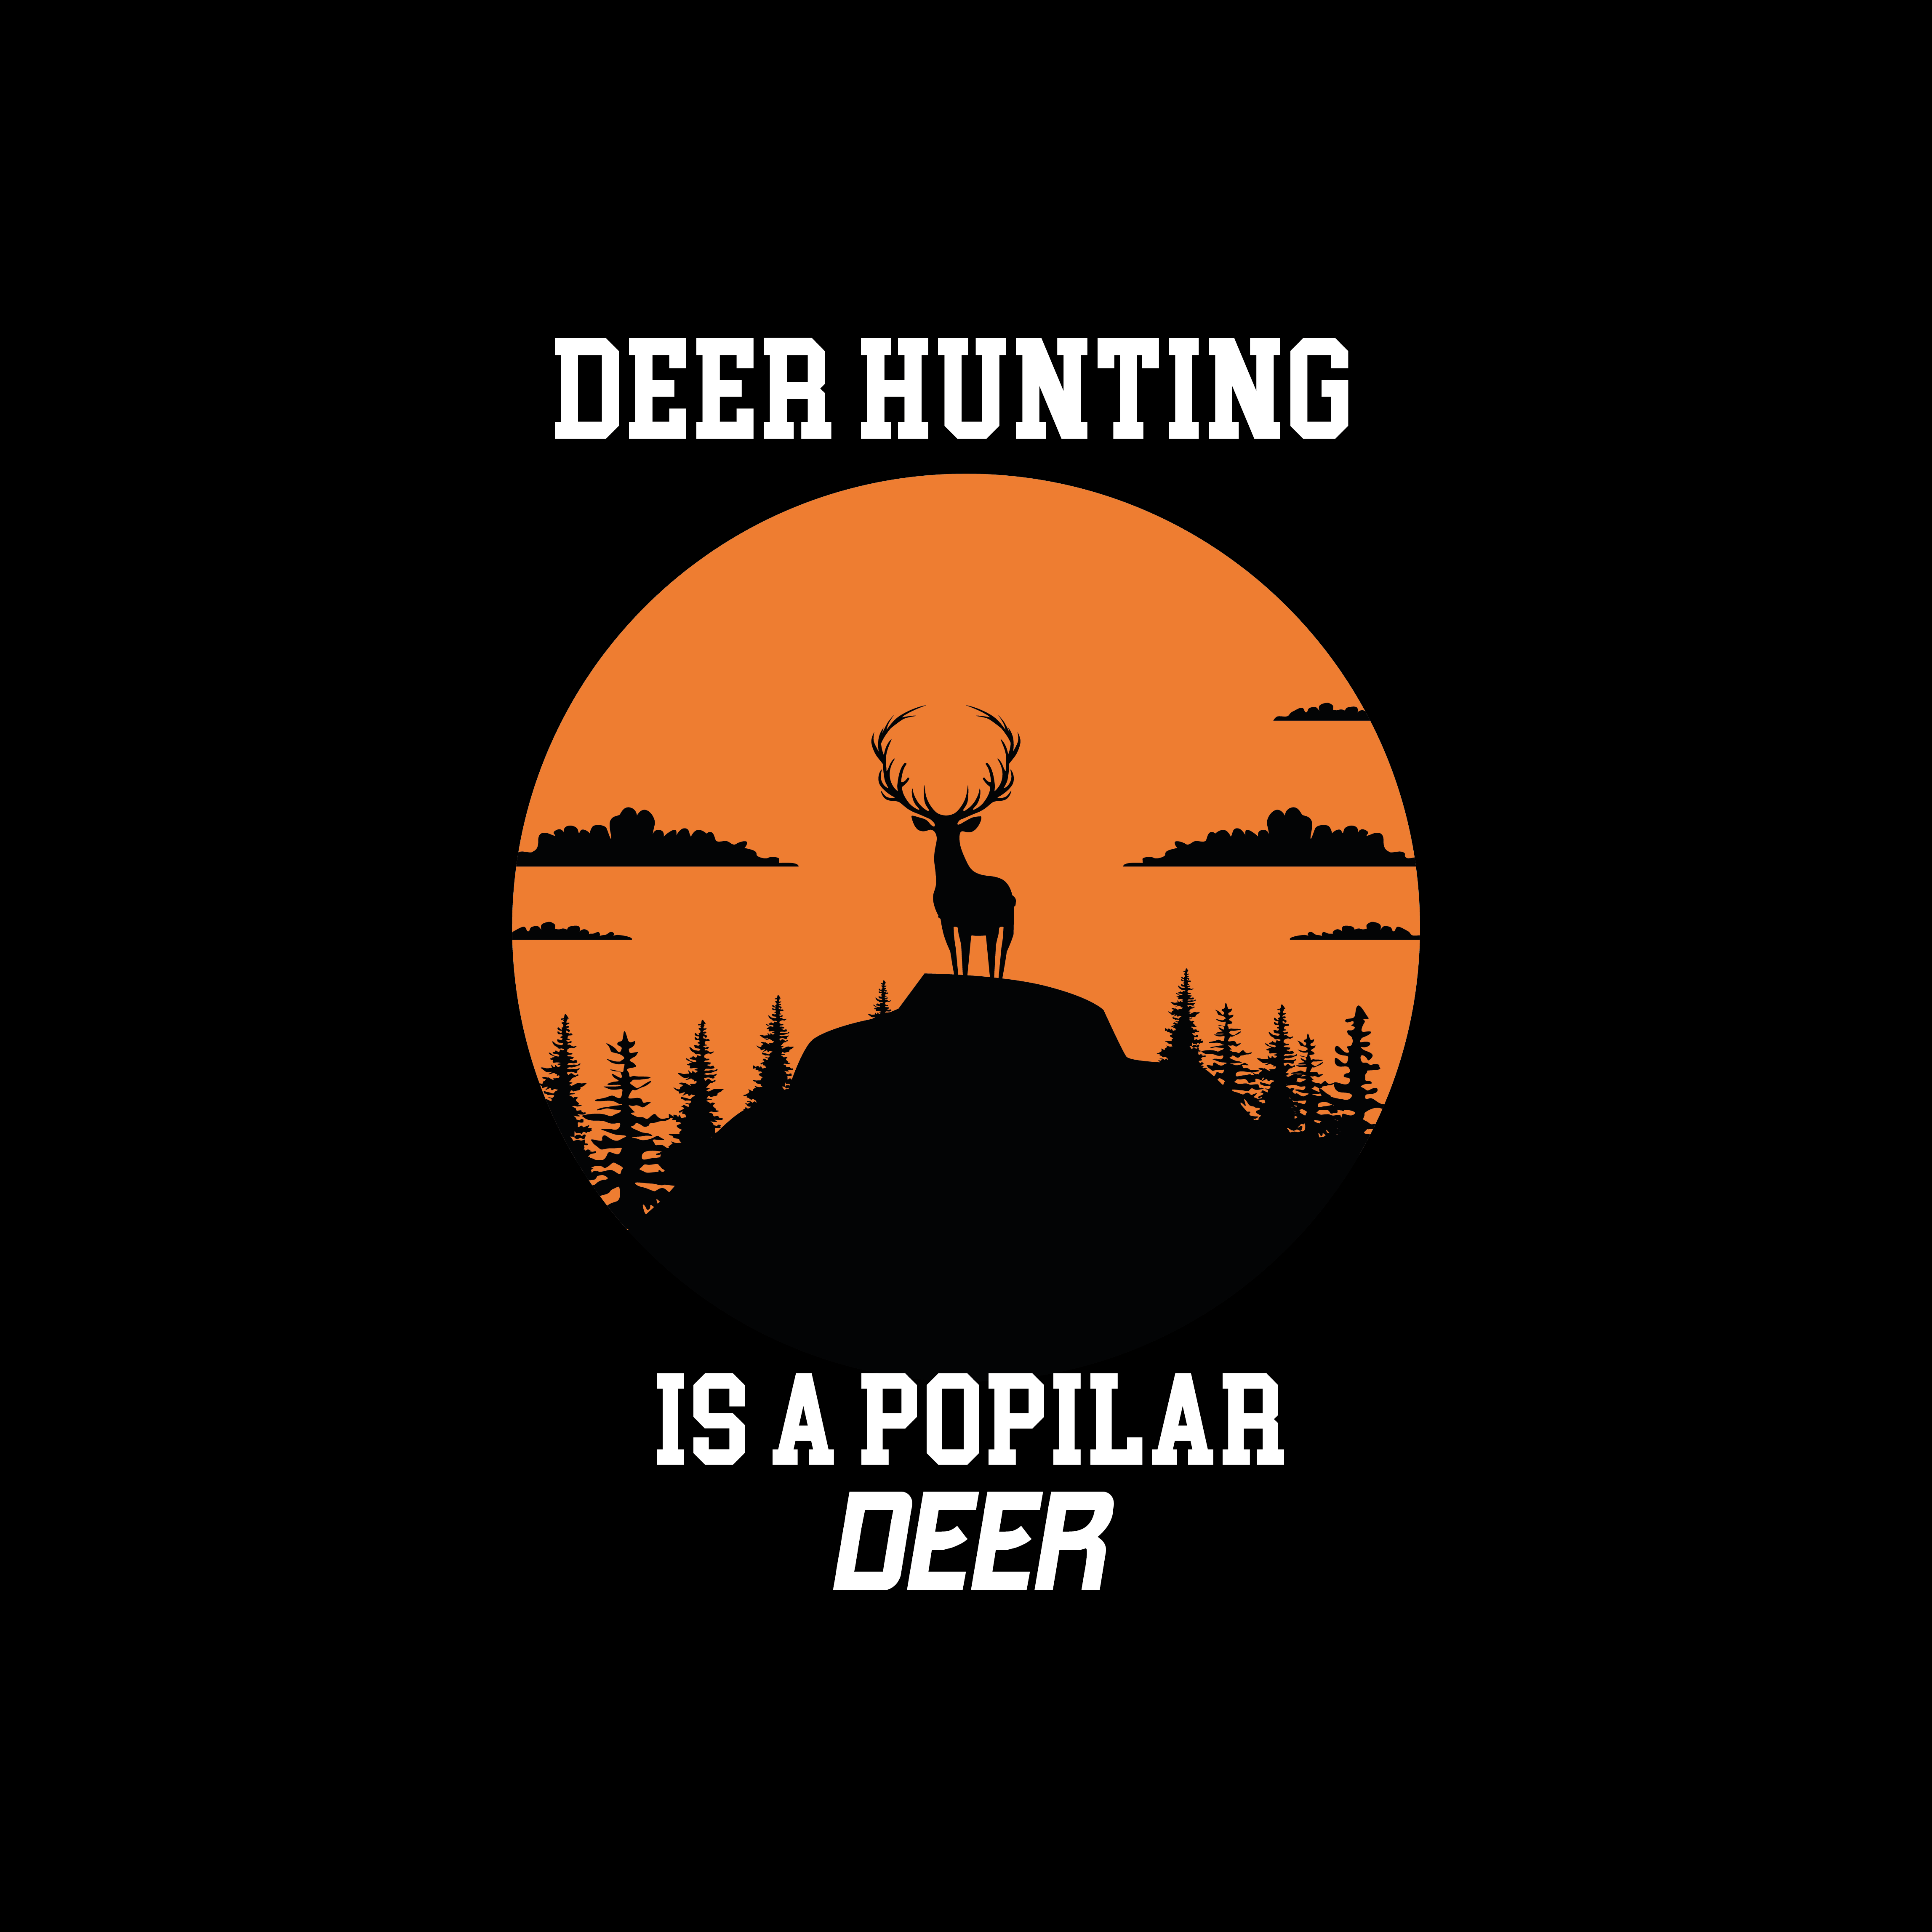 Deer Hunting Is A Popular Deer image preview.